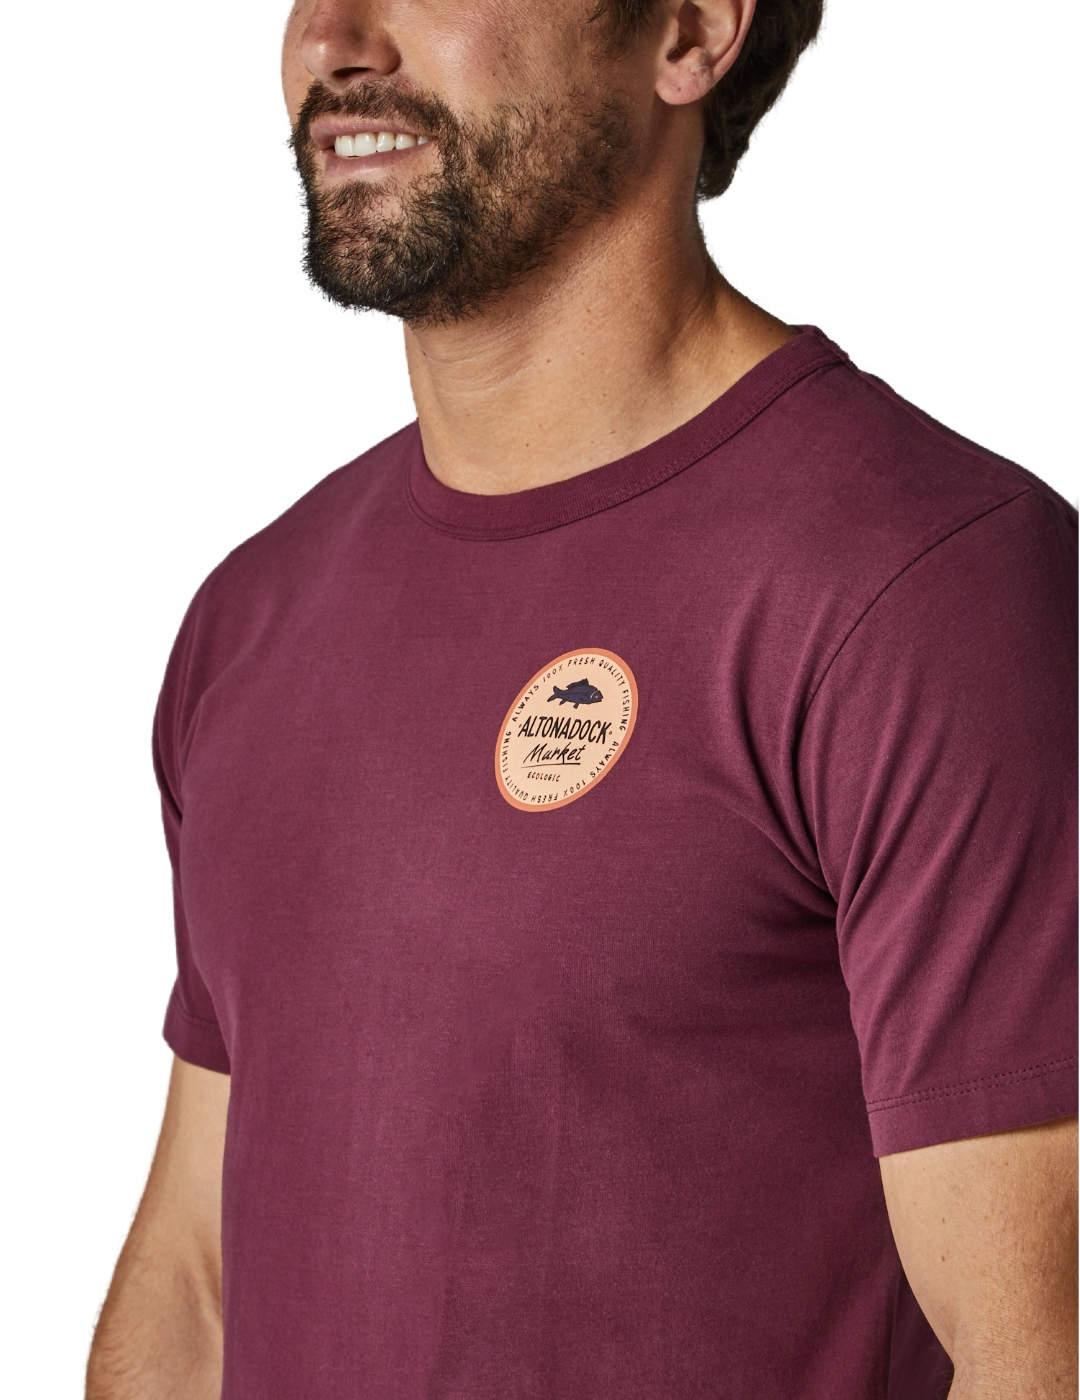 Camiseta Altonadock granate logo de hombre